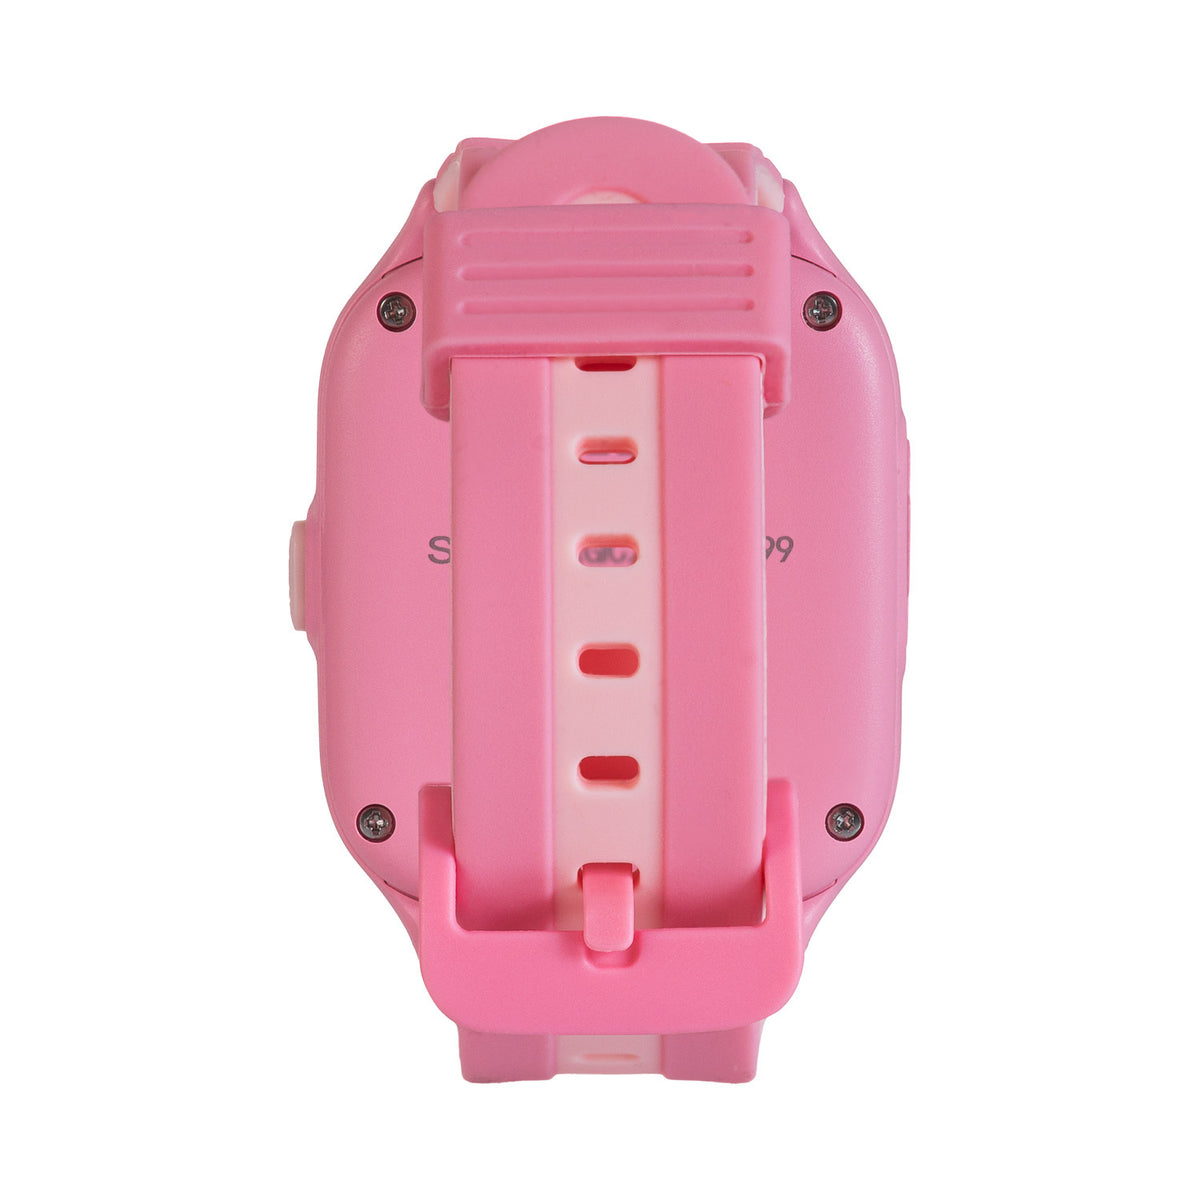 Dětské smart hodinky Vivax 4G, růžové